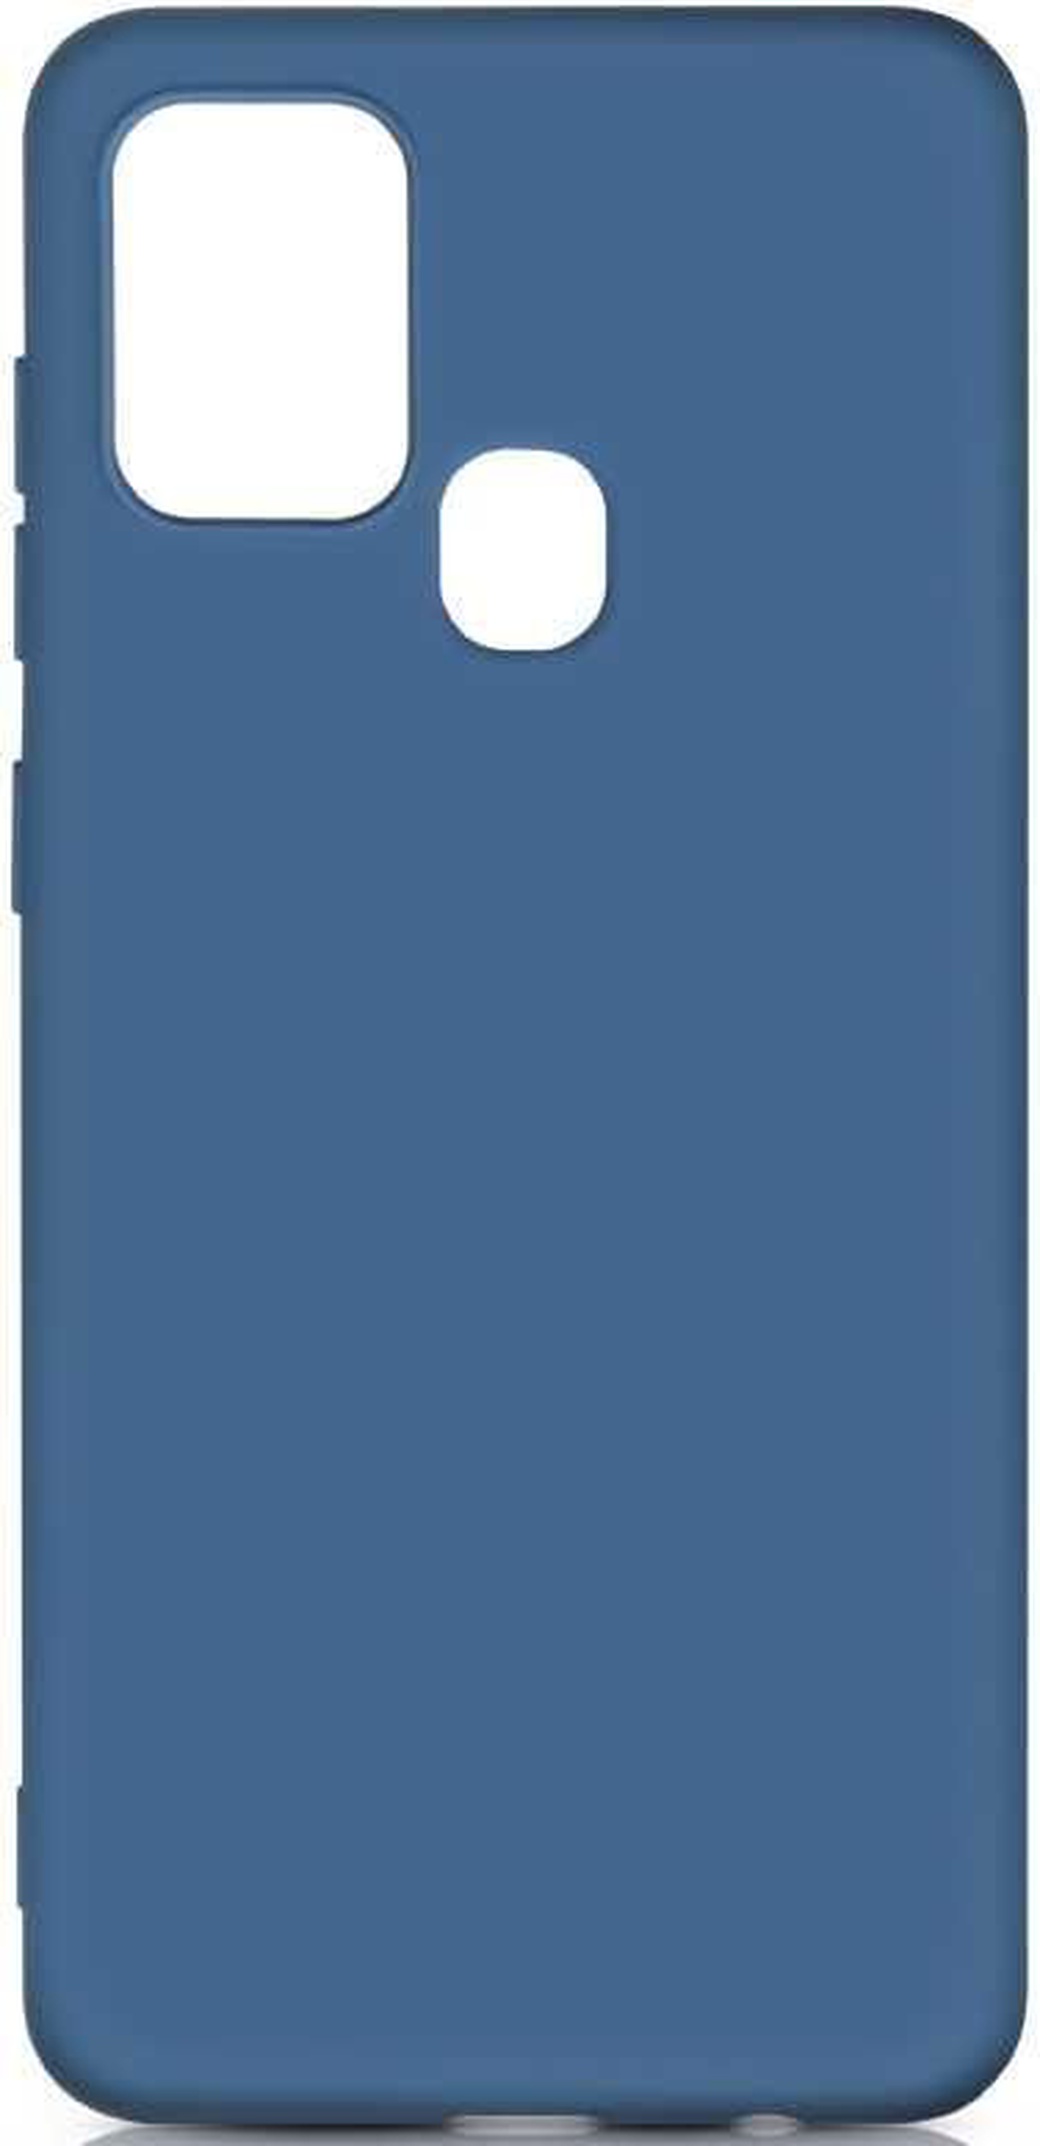 Чехол-накладка для Samsung (M315) Galaxy M31 синий, Microfiber Case, Borasco фото